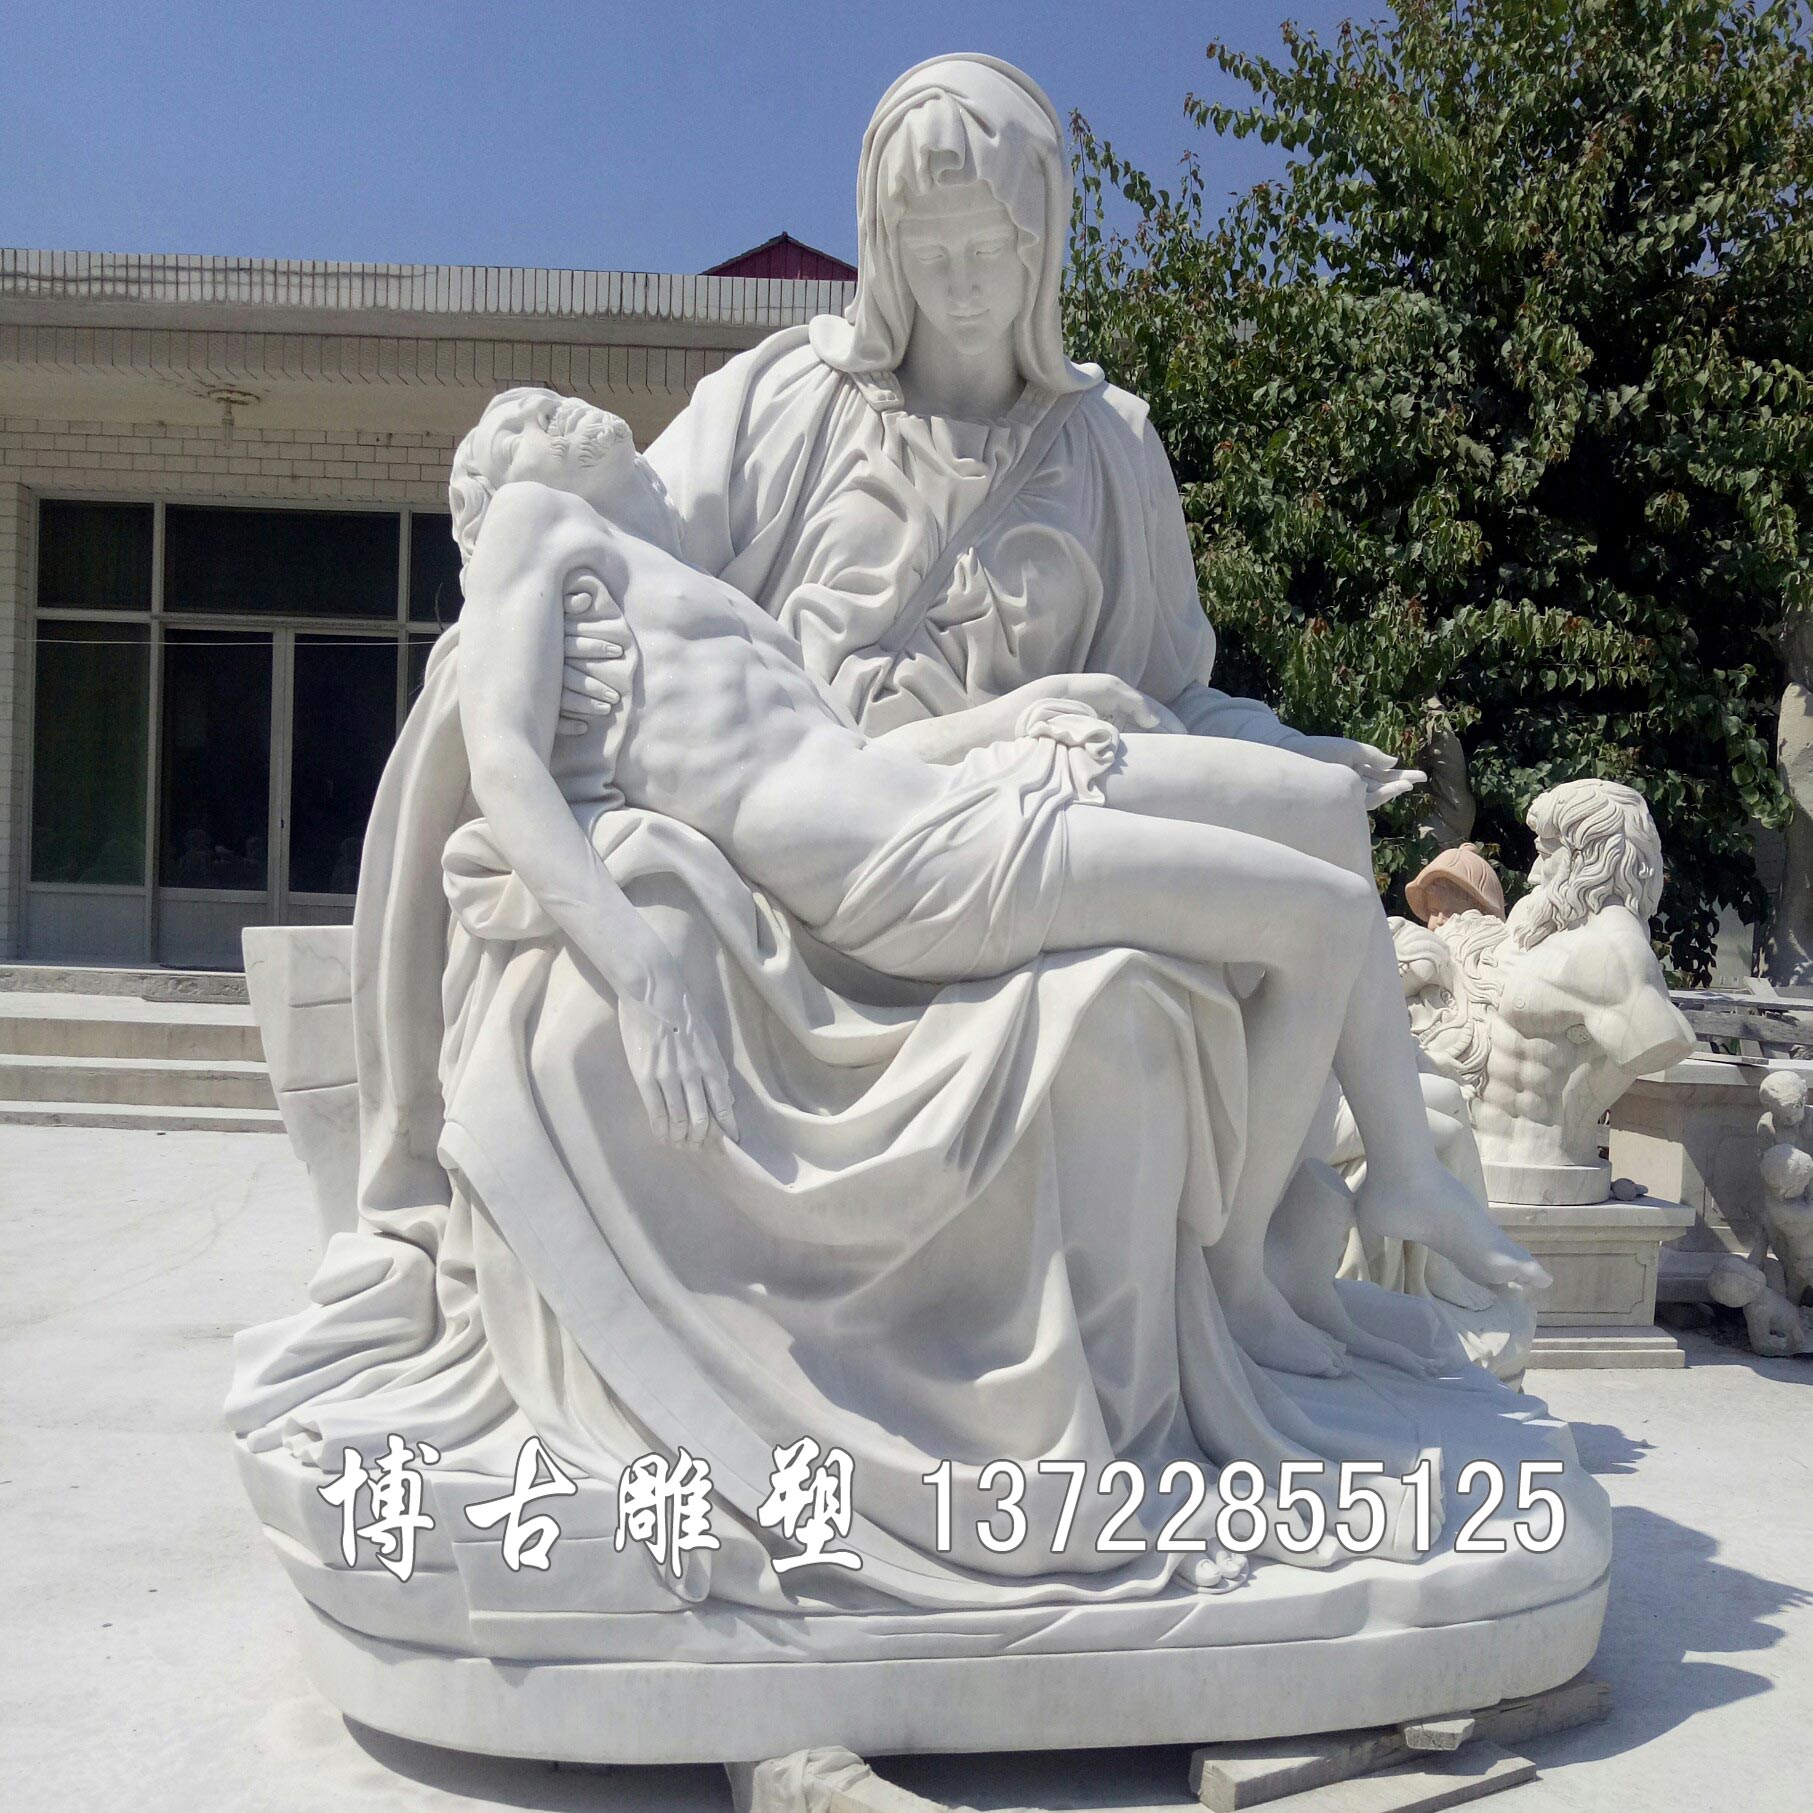 石雕人物  歐式人物雕像 廣場公園人物雕塑